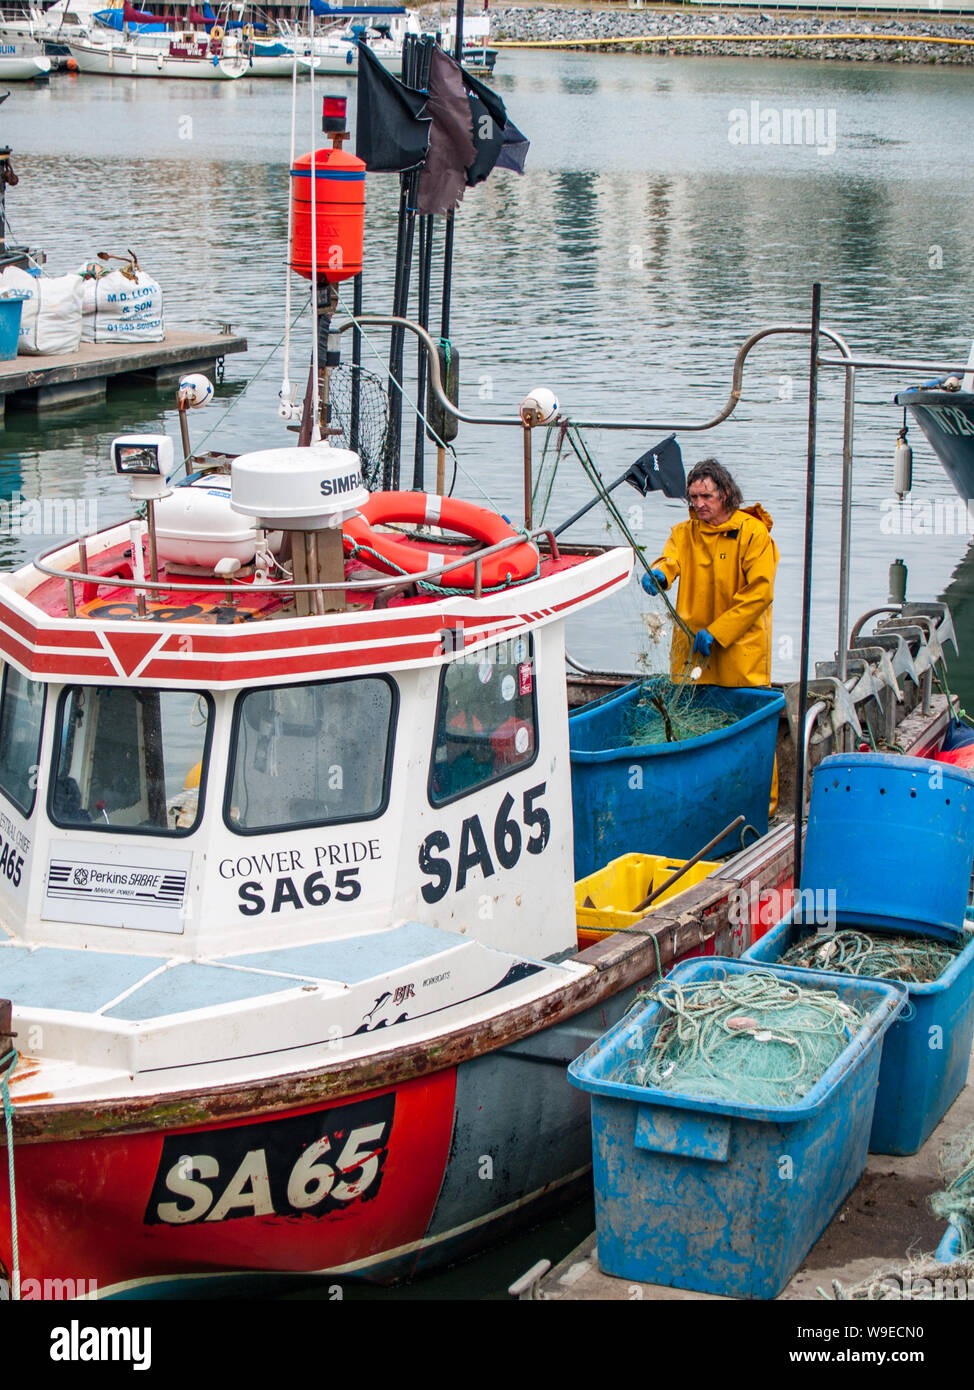 Port de plaisance de Swansea. Un bateau de pêche peut être vu dans l'avant-plan et les bateaux et yachts privés dans la distance. Pays de Galles, Royaume-Uni Banque D'Images